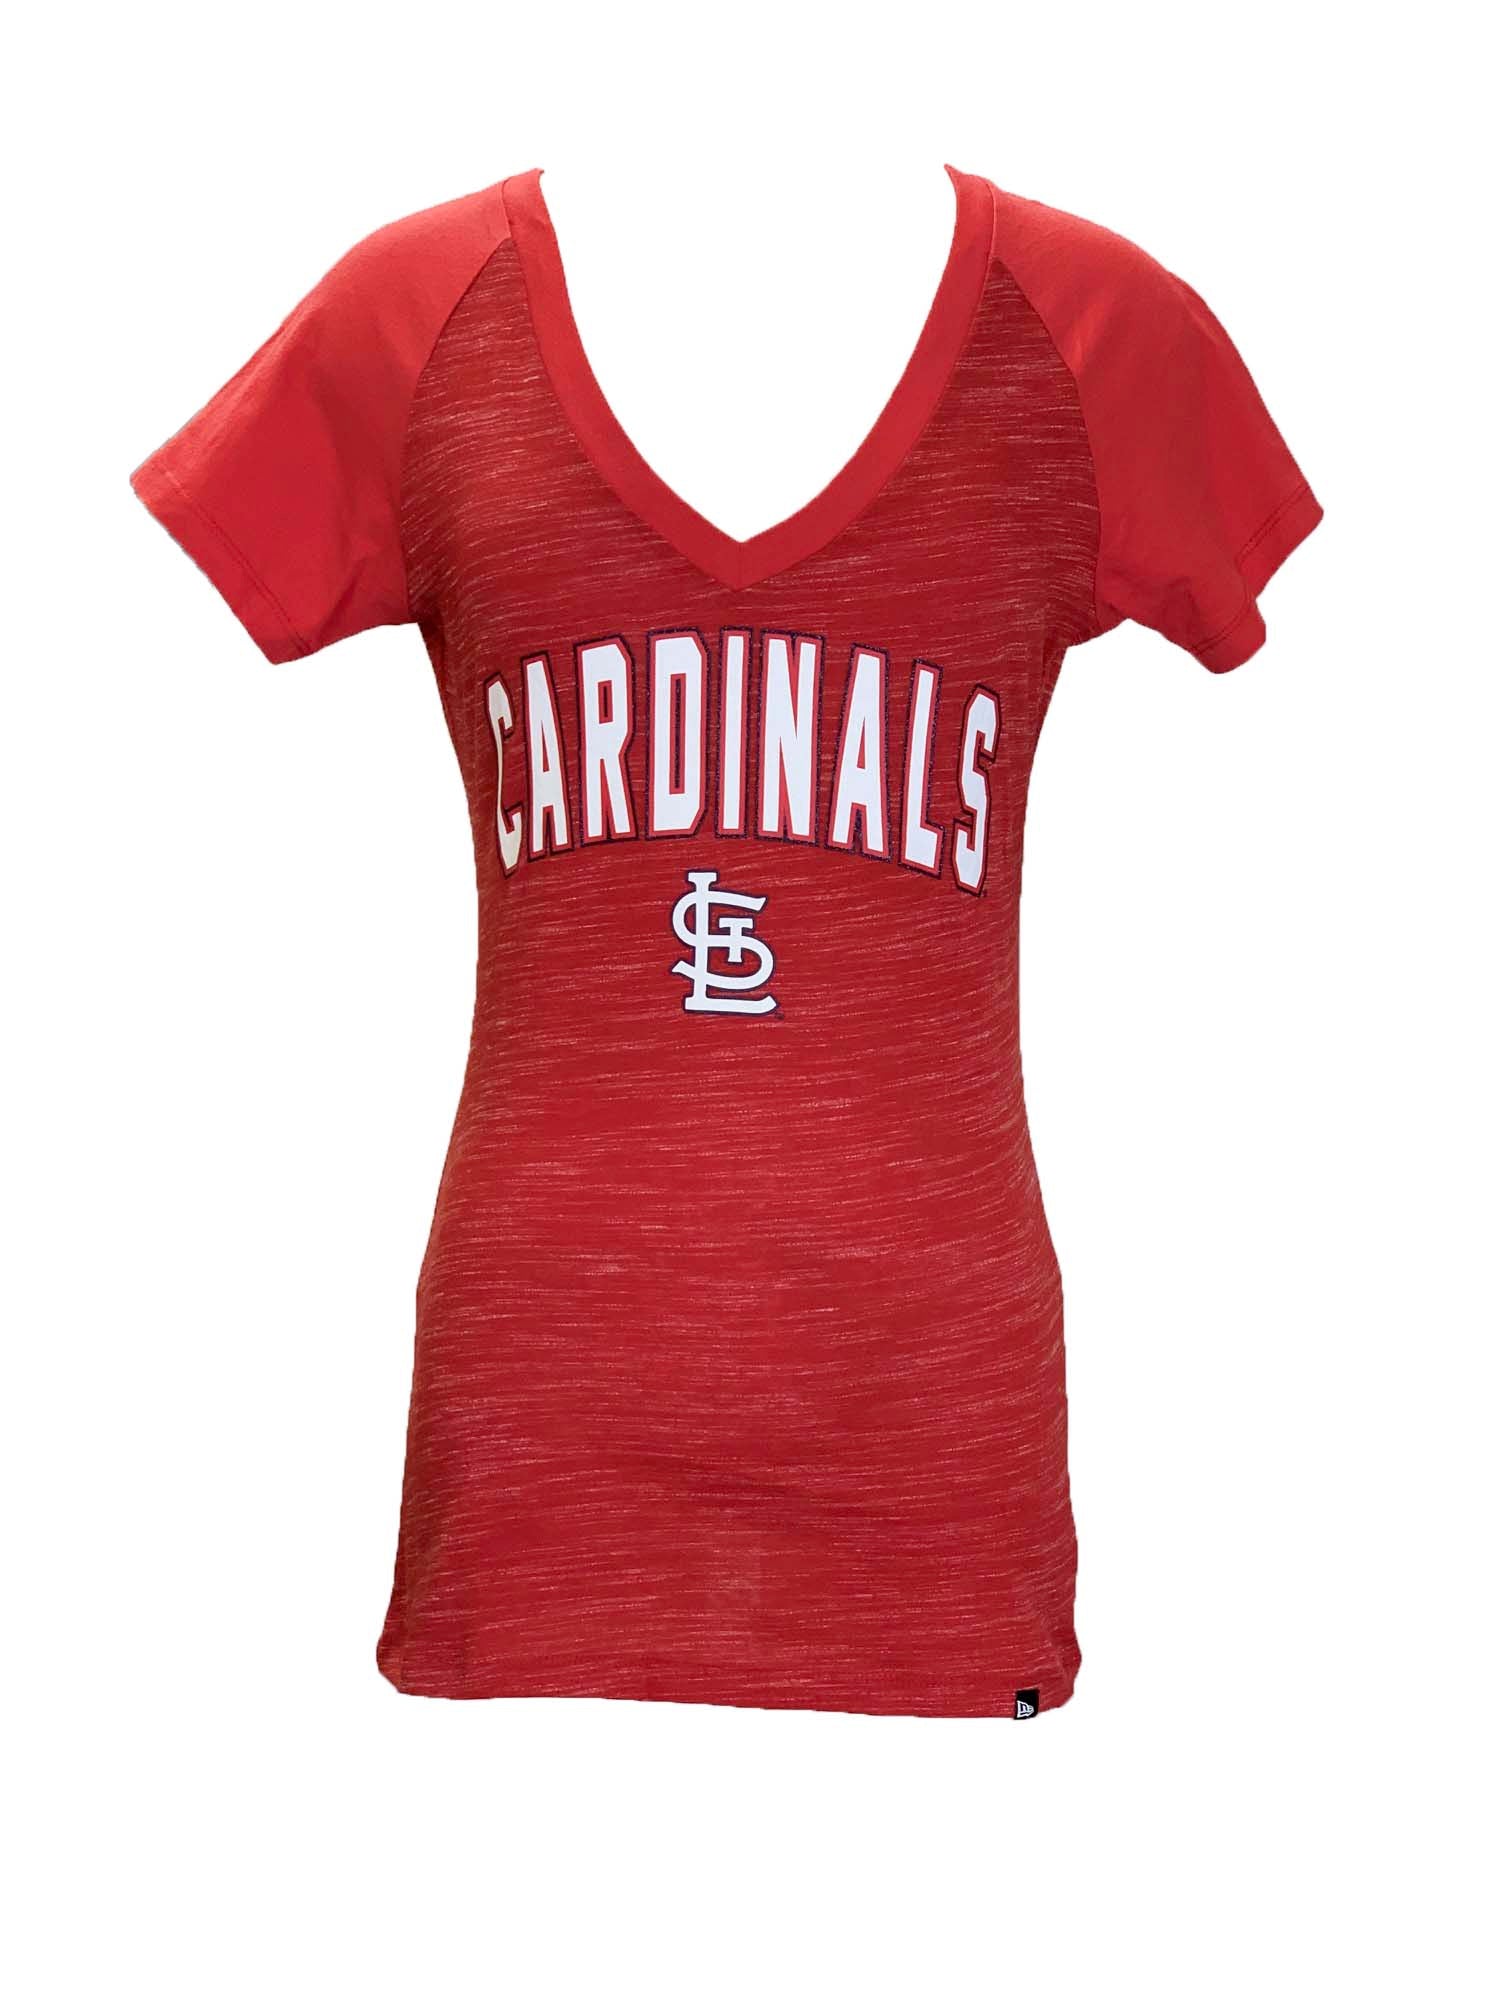 cardinals womens shirt